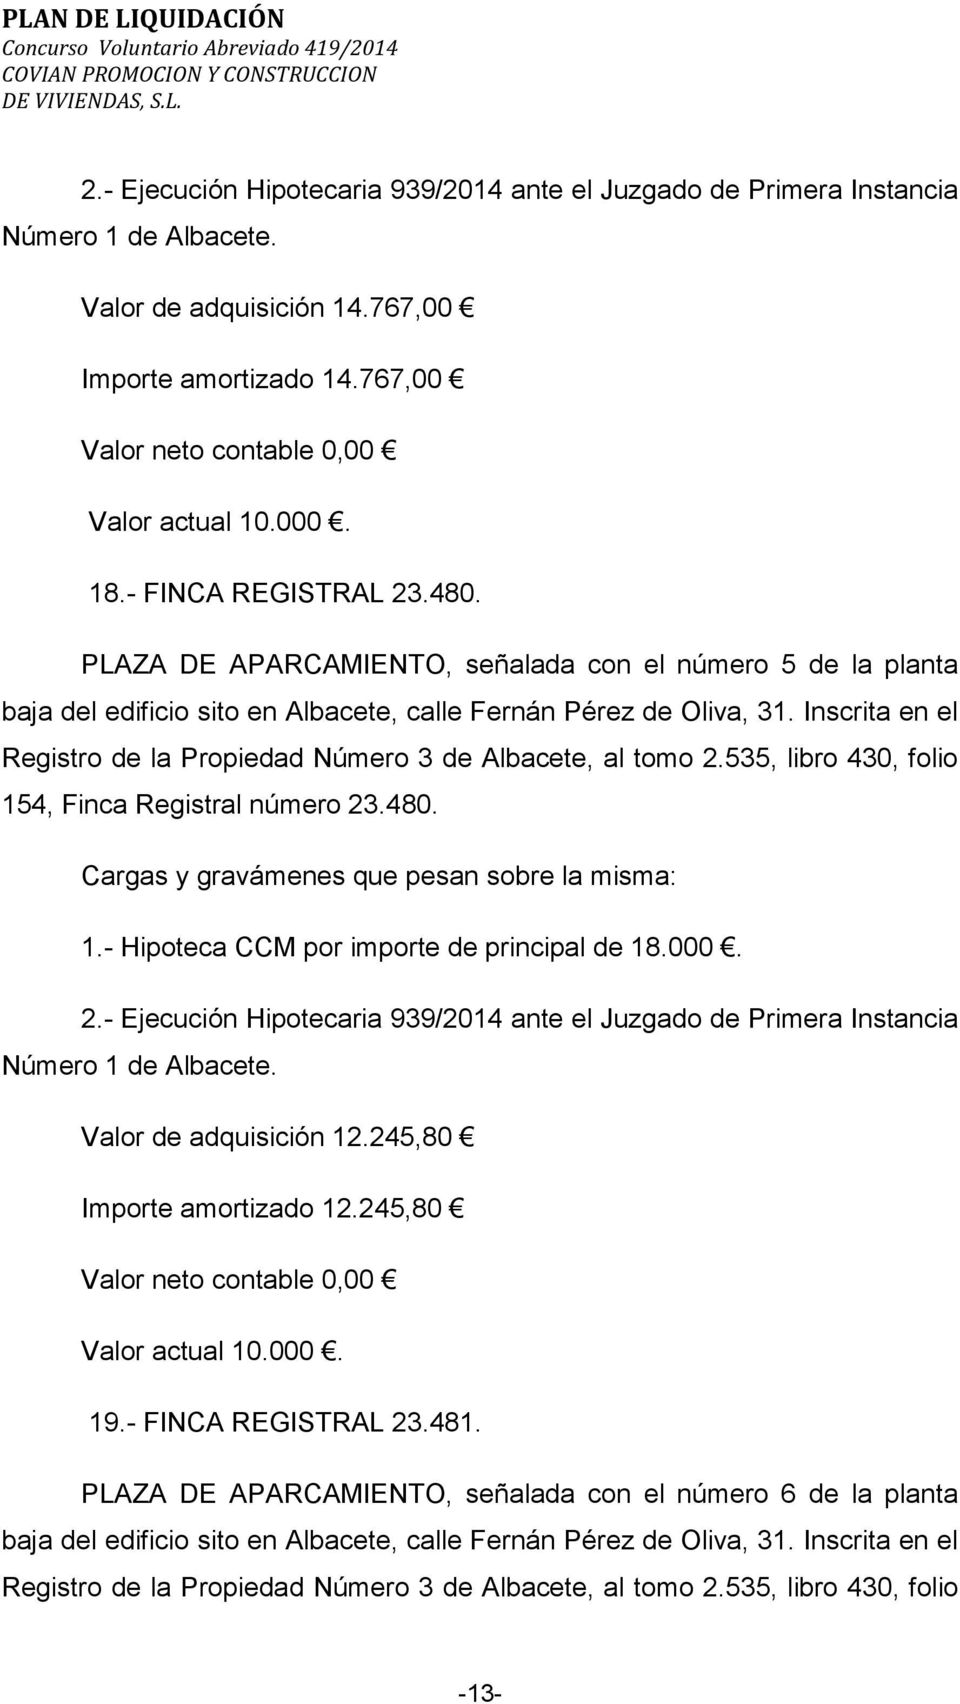 4, Finca Registral número 23.480. 1.- Hipoteca CCM por importe de principal de 18.000. 2.- Ejecución Hipotecaria 939/2014 ante el Juzgado de Primera Instancia Número 1 de Albacete.